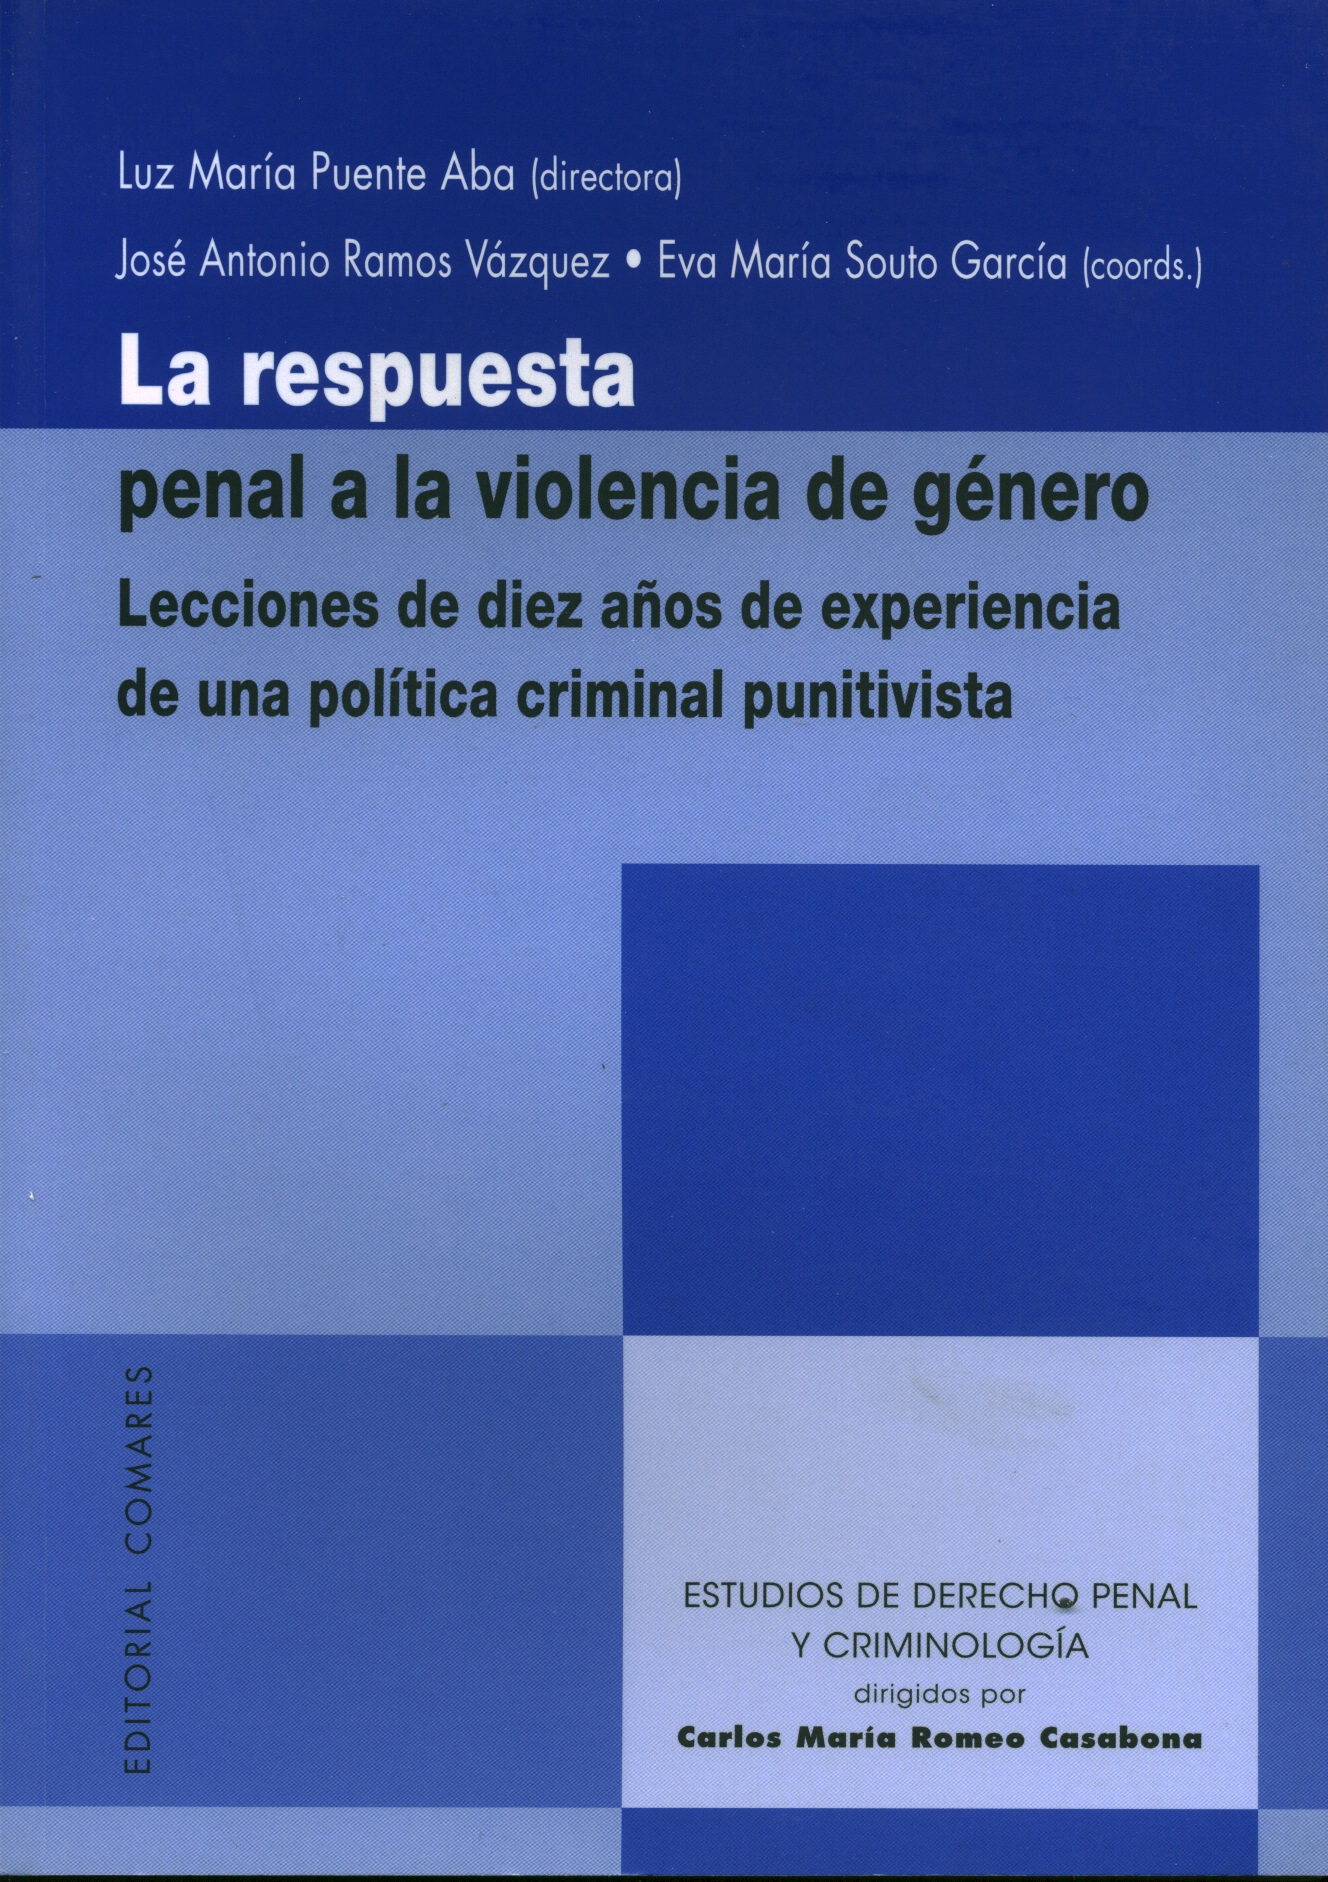 La respuesta penal a la violencia de género. Lecciones de diez años de experiencia de una política criminal punitivista